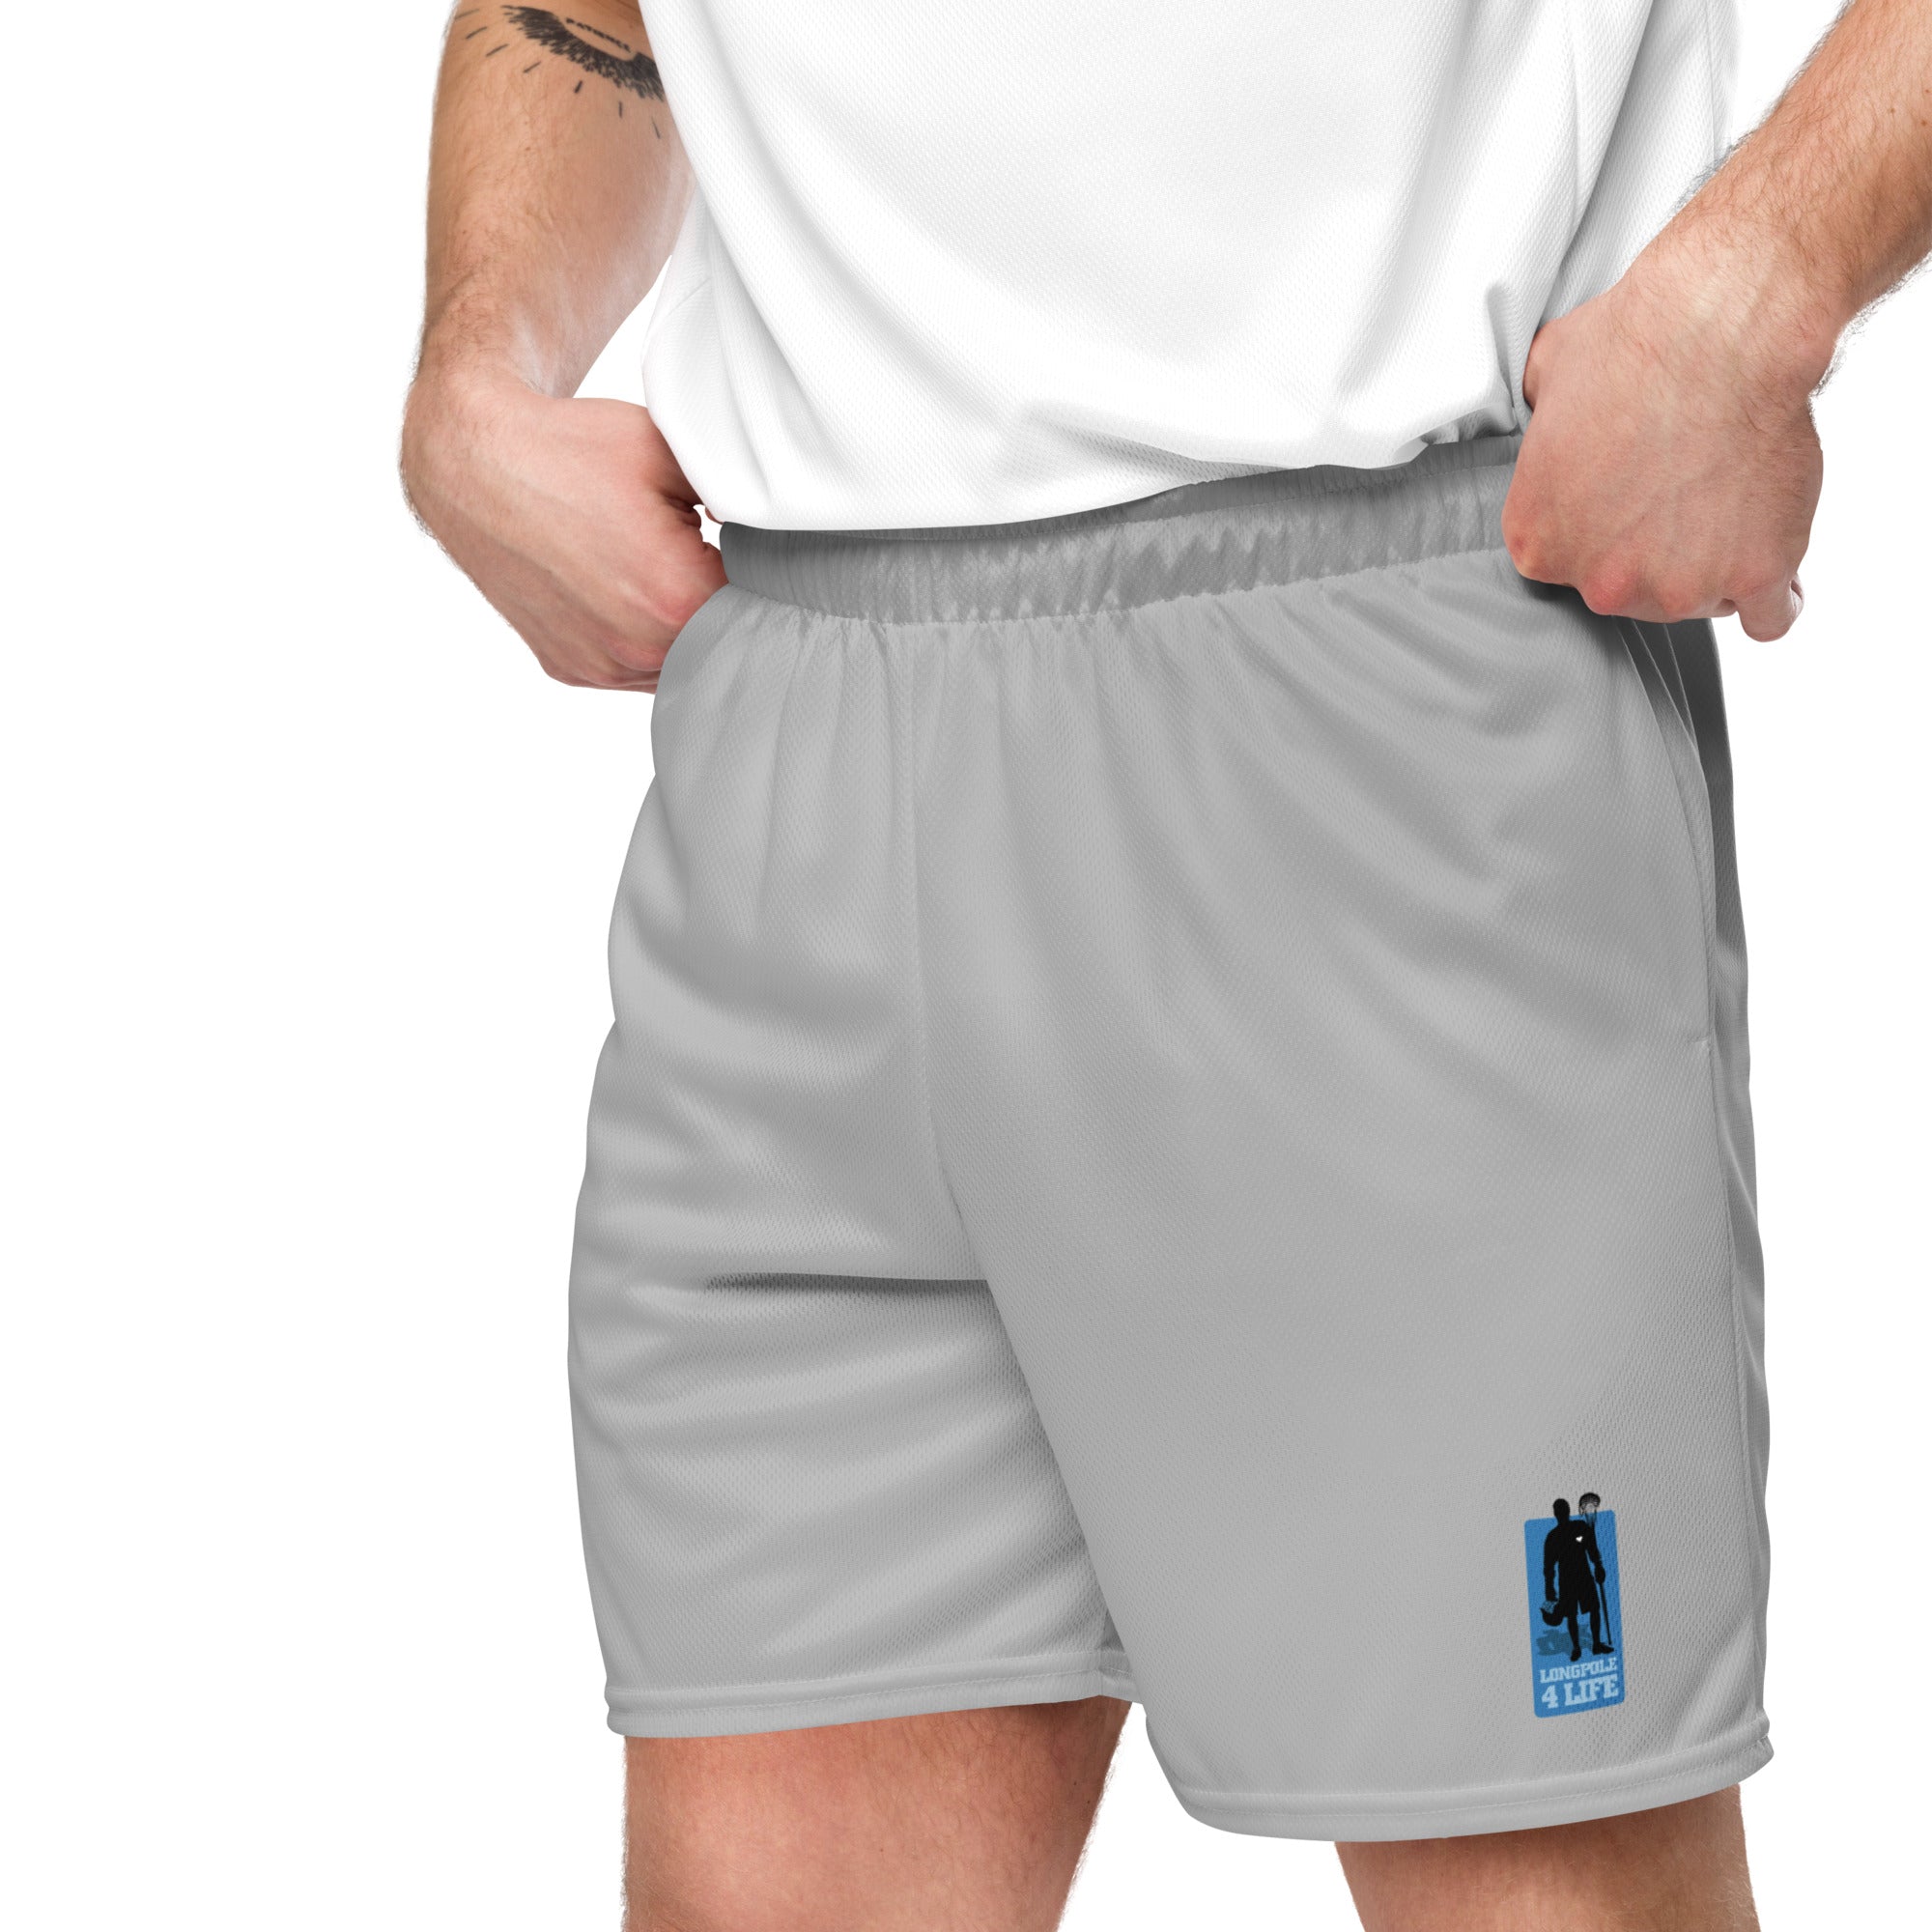 "Longpole 4 Life" Athletic Shorts